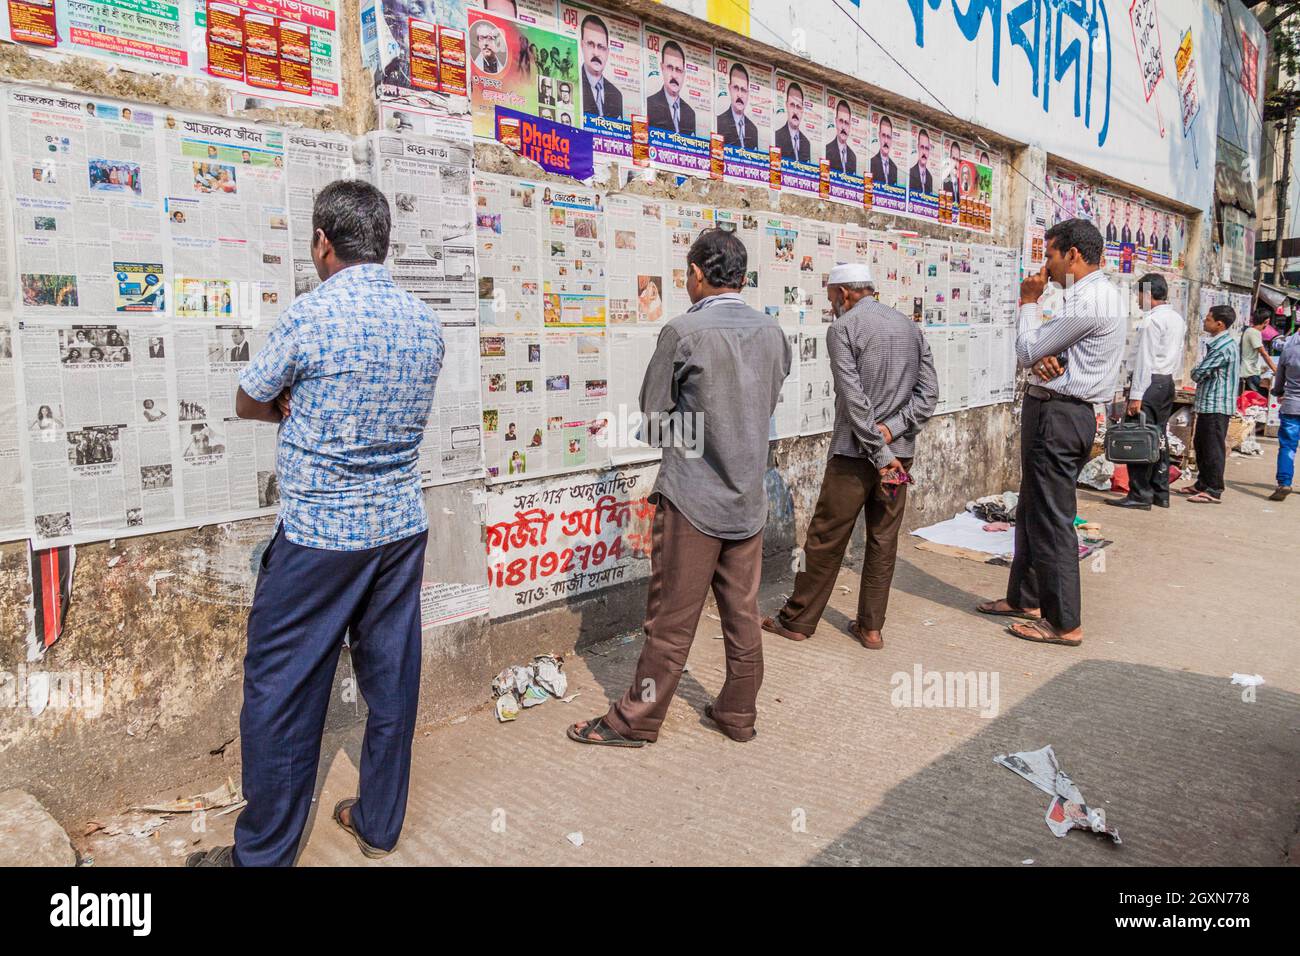 DHAKA, BANGLADESH - 20 NOVEMBRE 2016: La gente sta leggendo il quotidiano pubblicato su un muro a Dhaka, Bangladesh Foto Stock